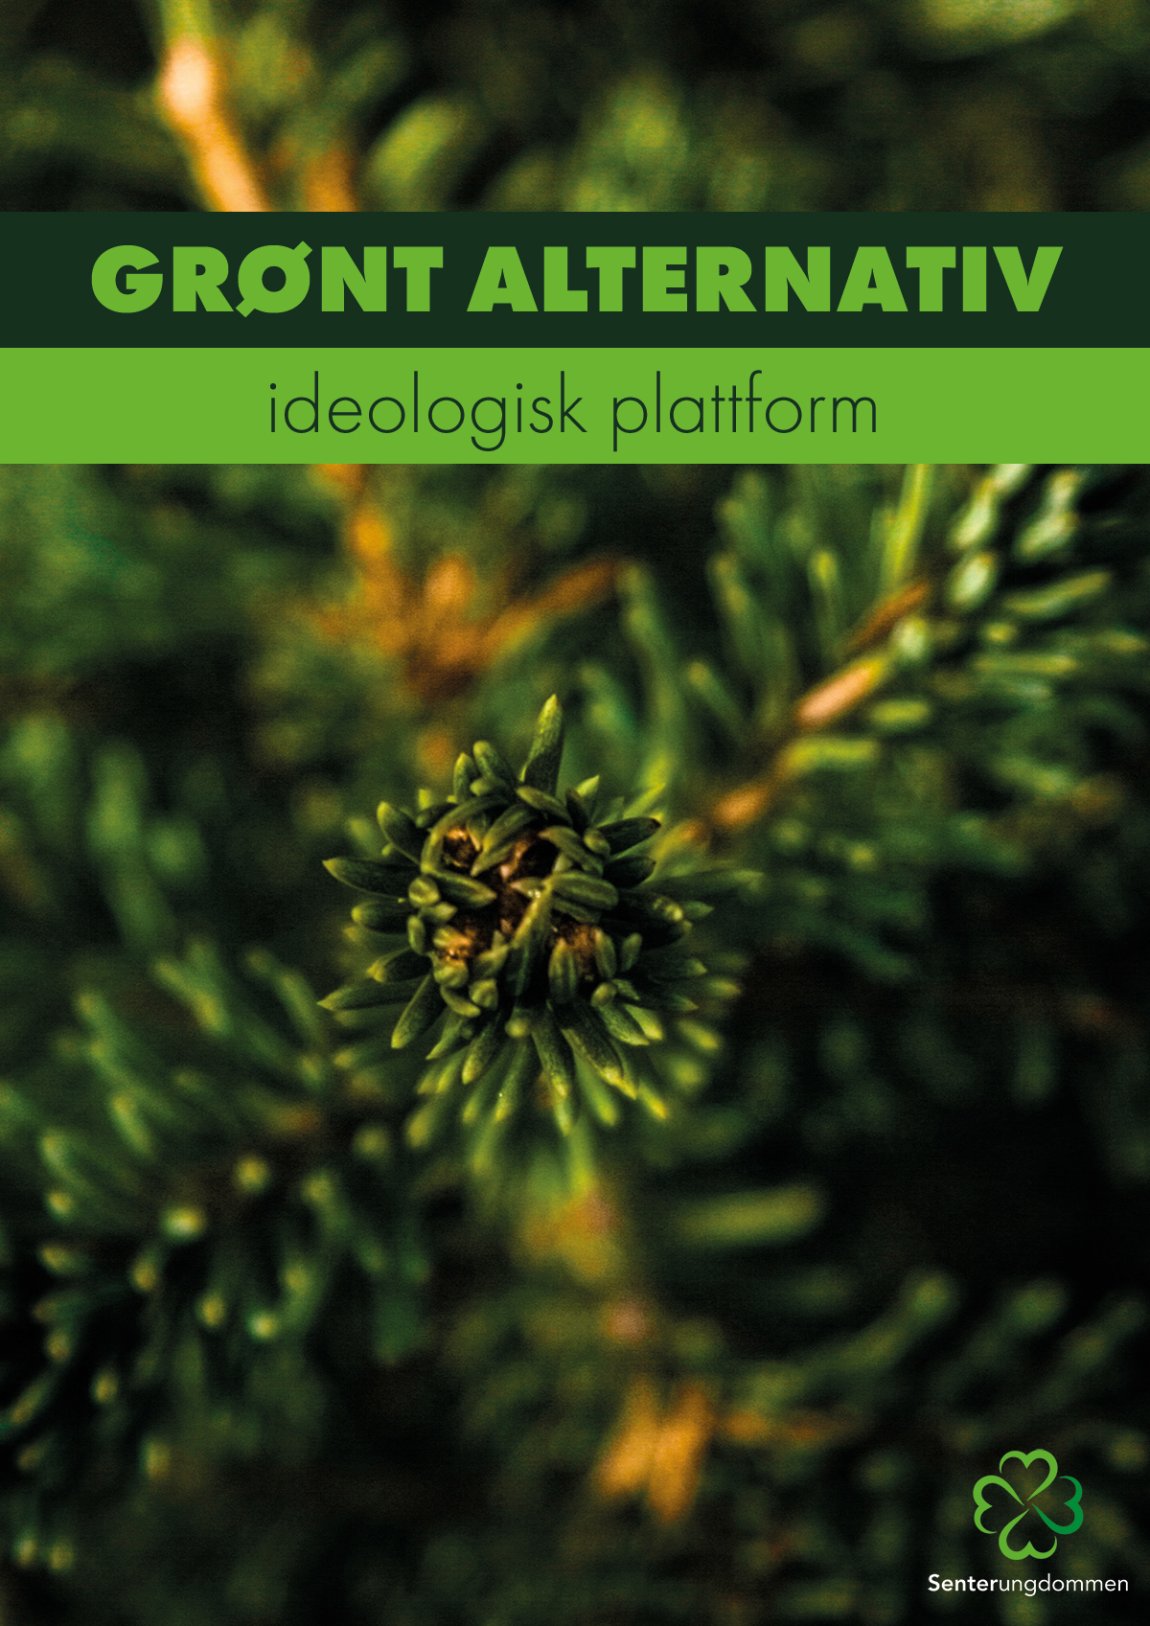 Andre utkast til Grønt Alternativ – Ideologisk plattform for Senterungdommen, er klart